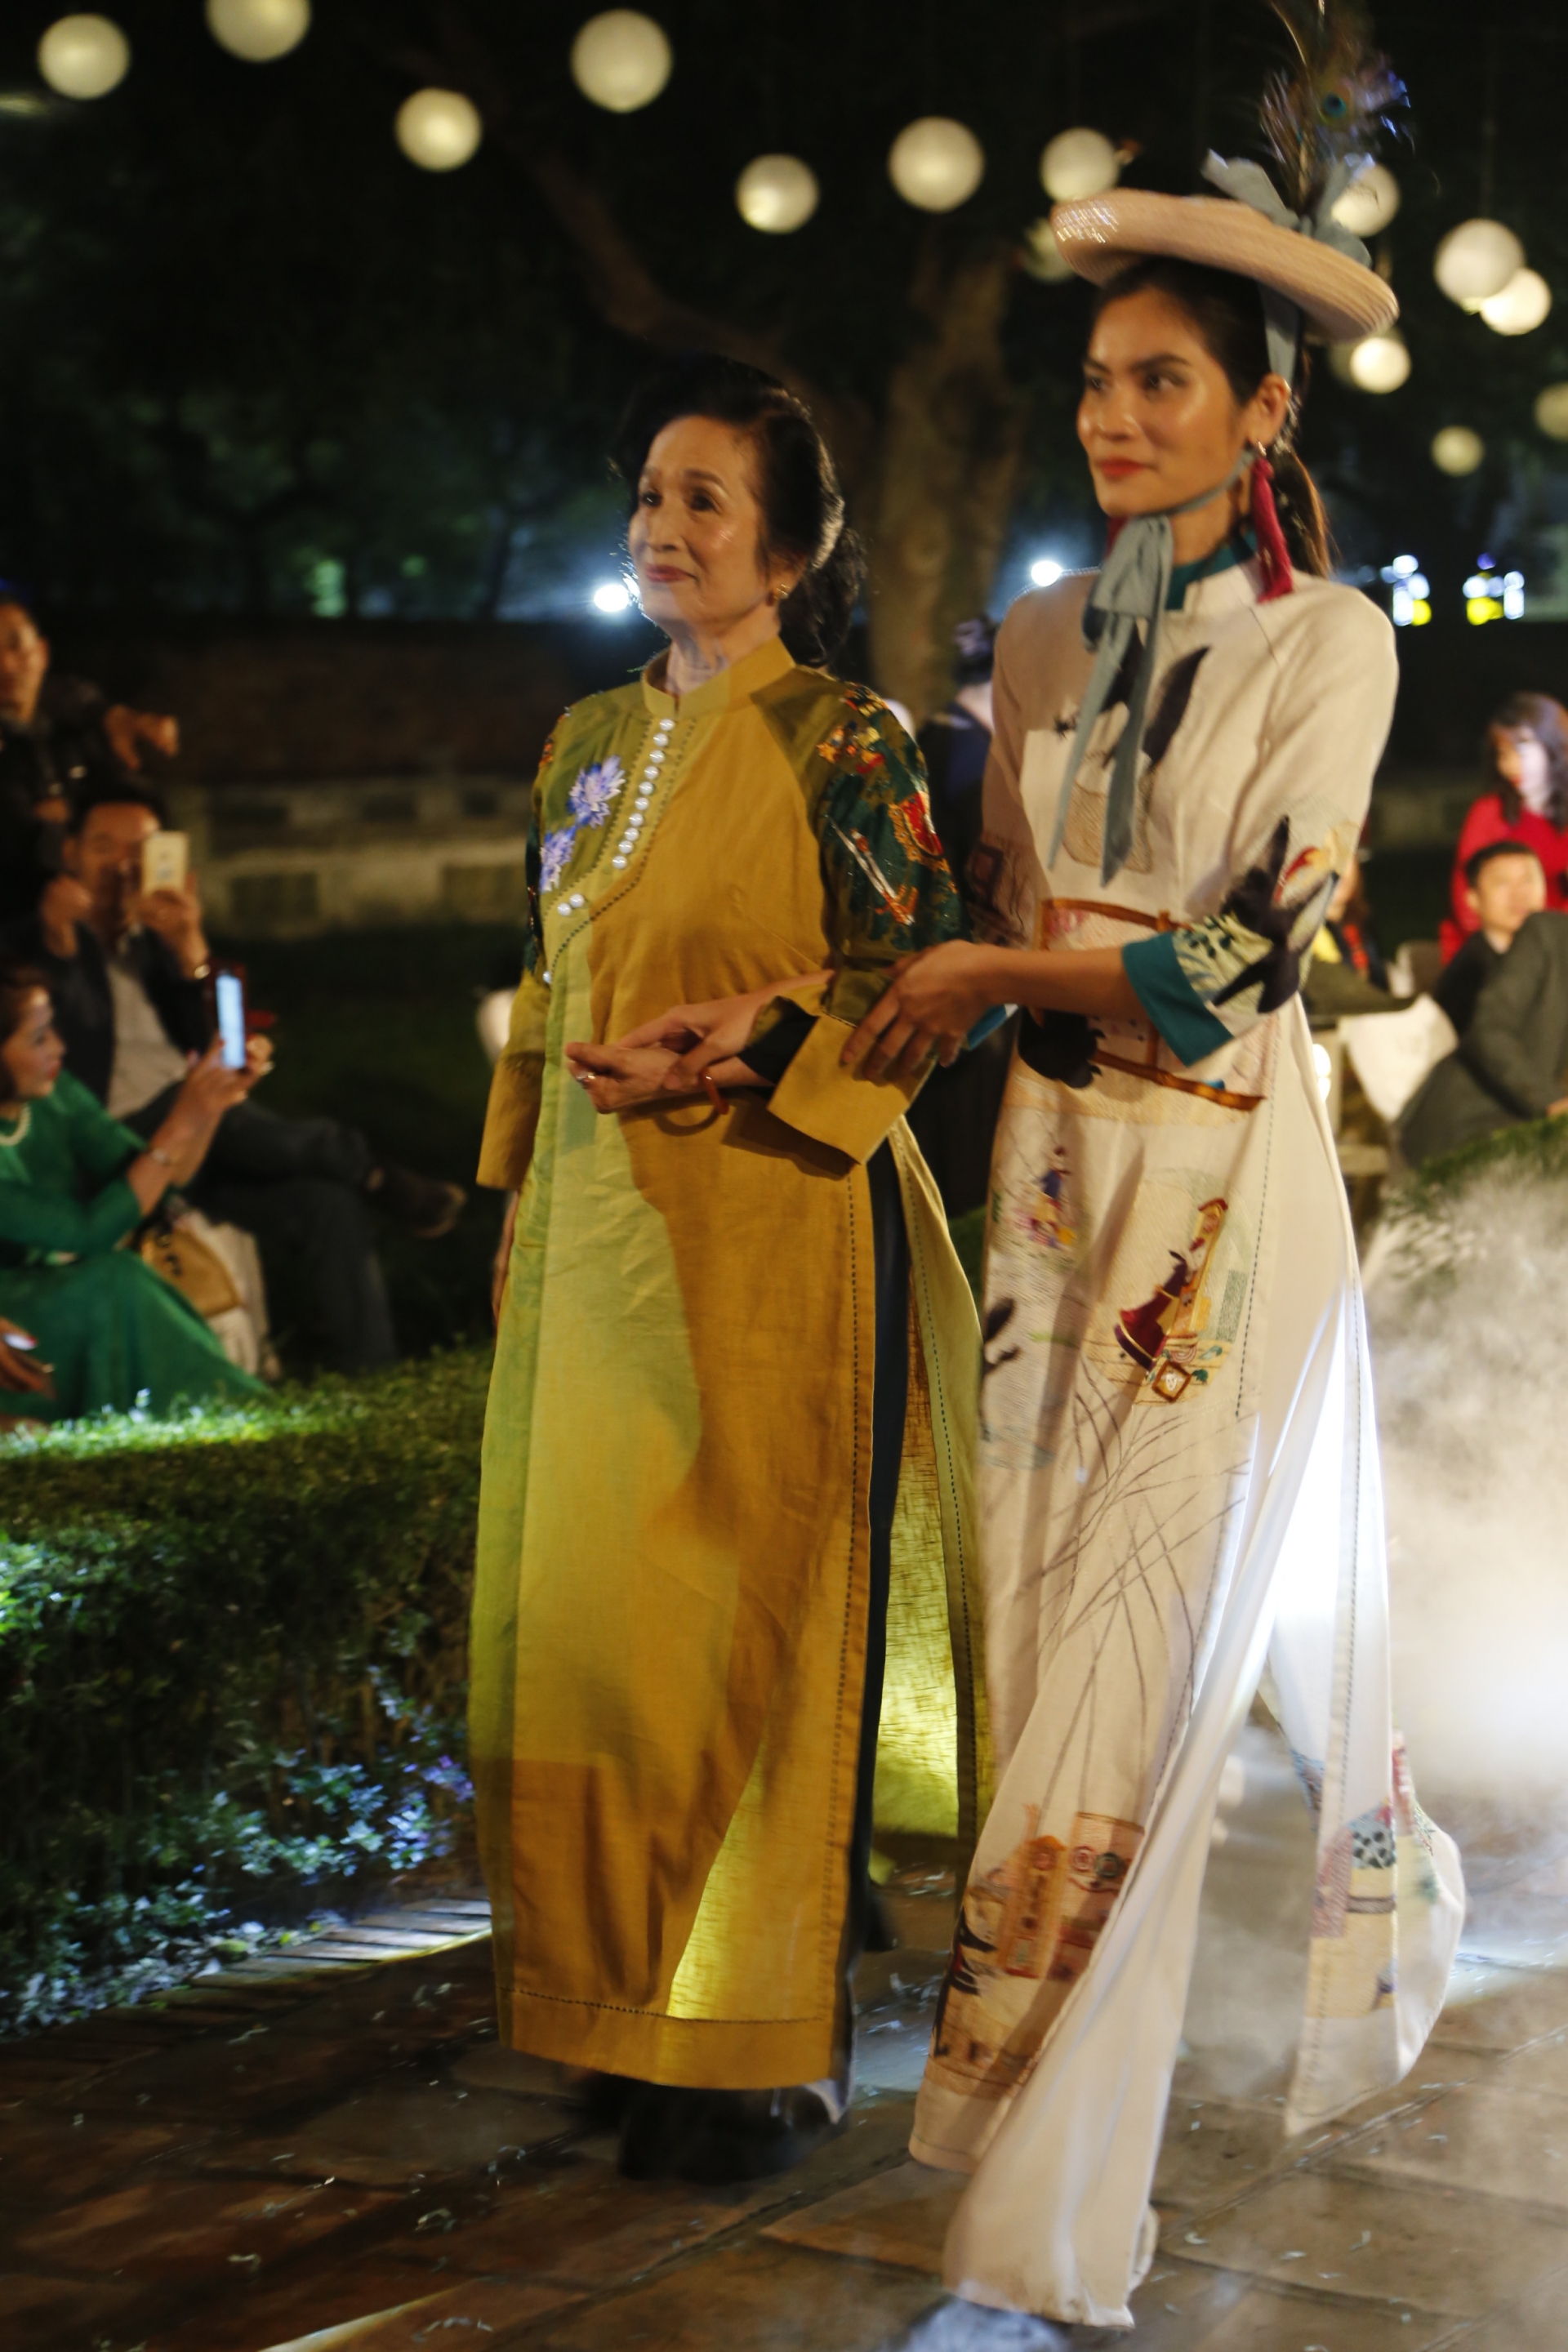 Nghệ sĩ nhân dân Trà Giang tham gia trình diễn áo dài ở tuổi U80.